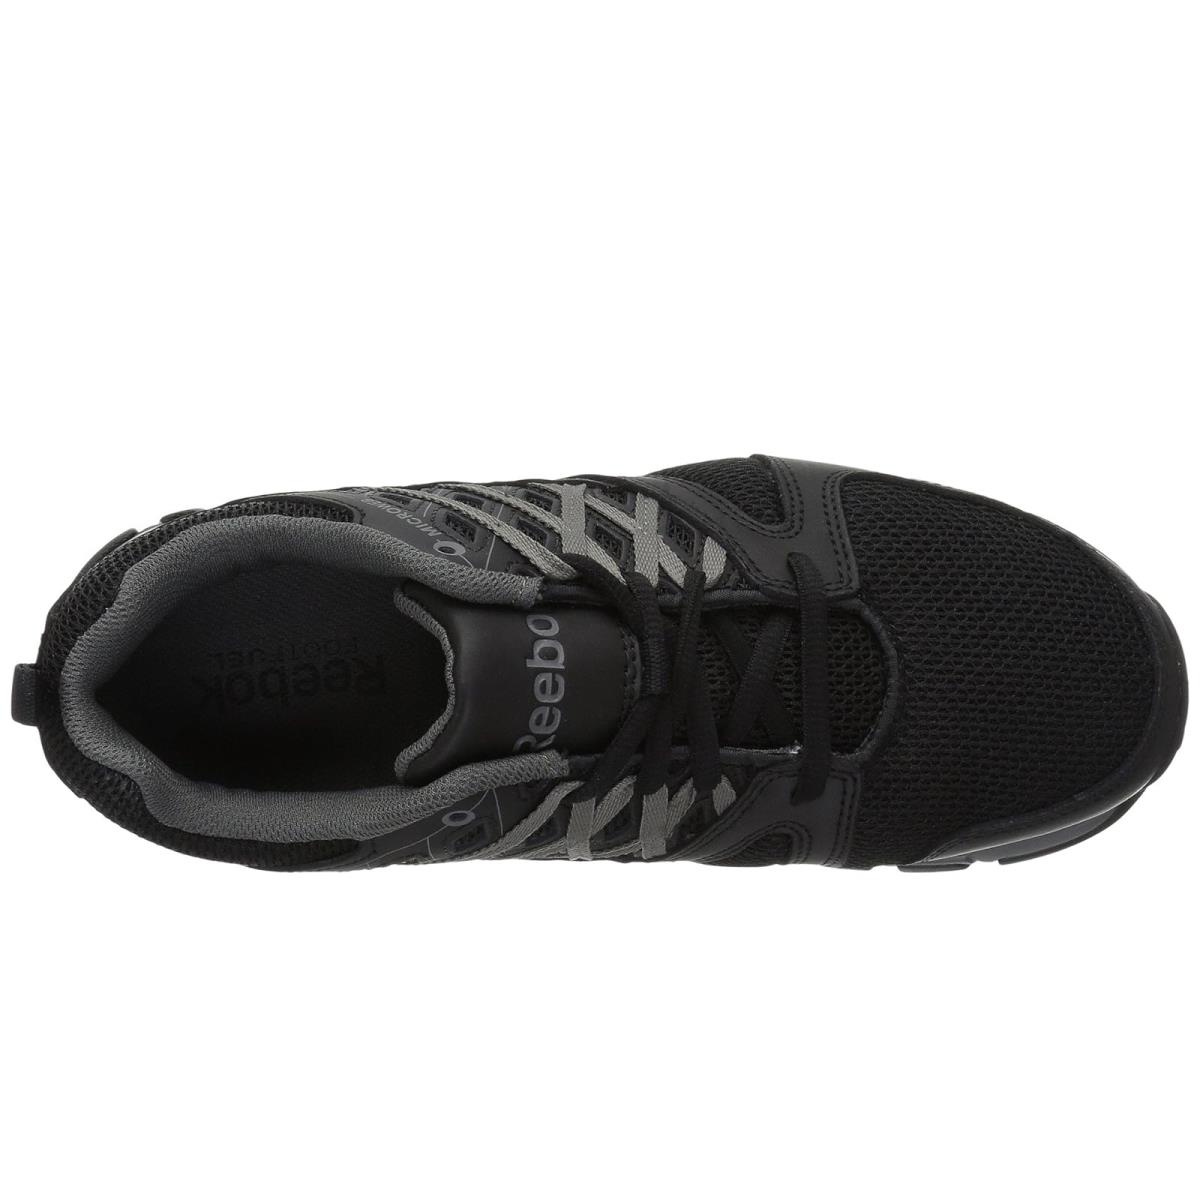 Reebok shoes  - Black 1 0